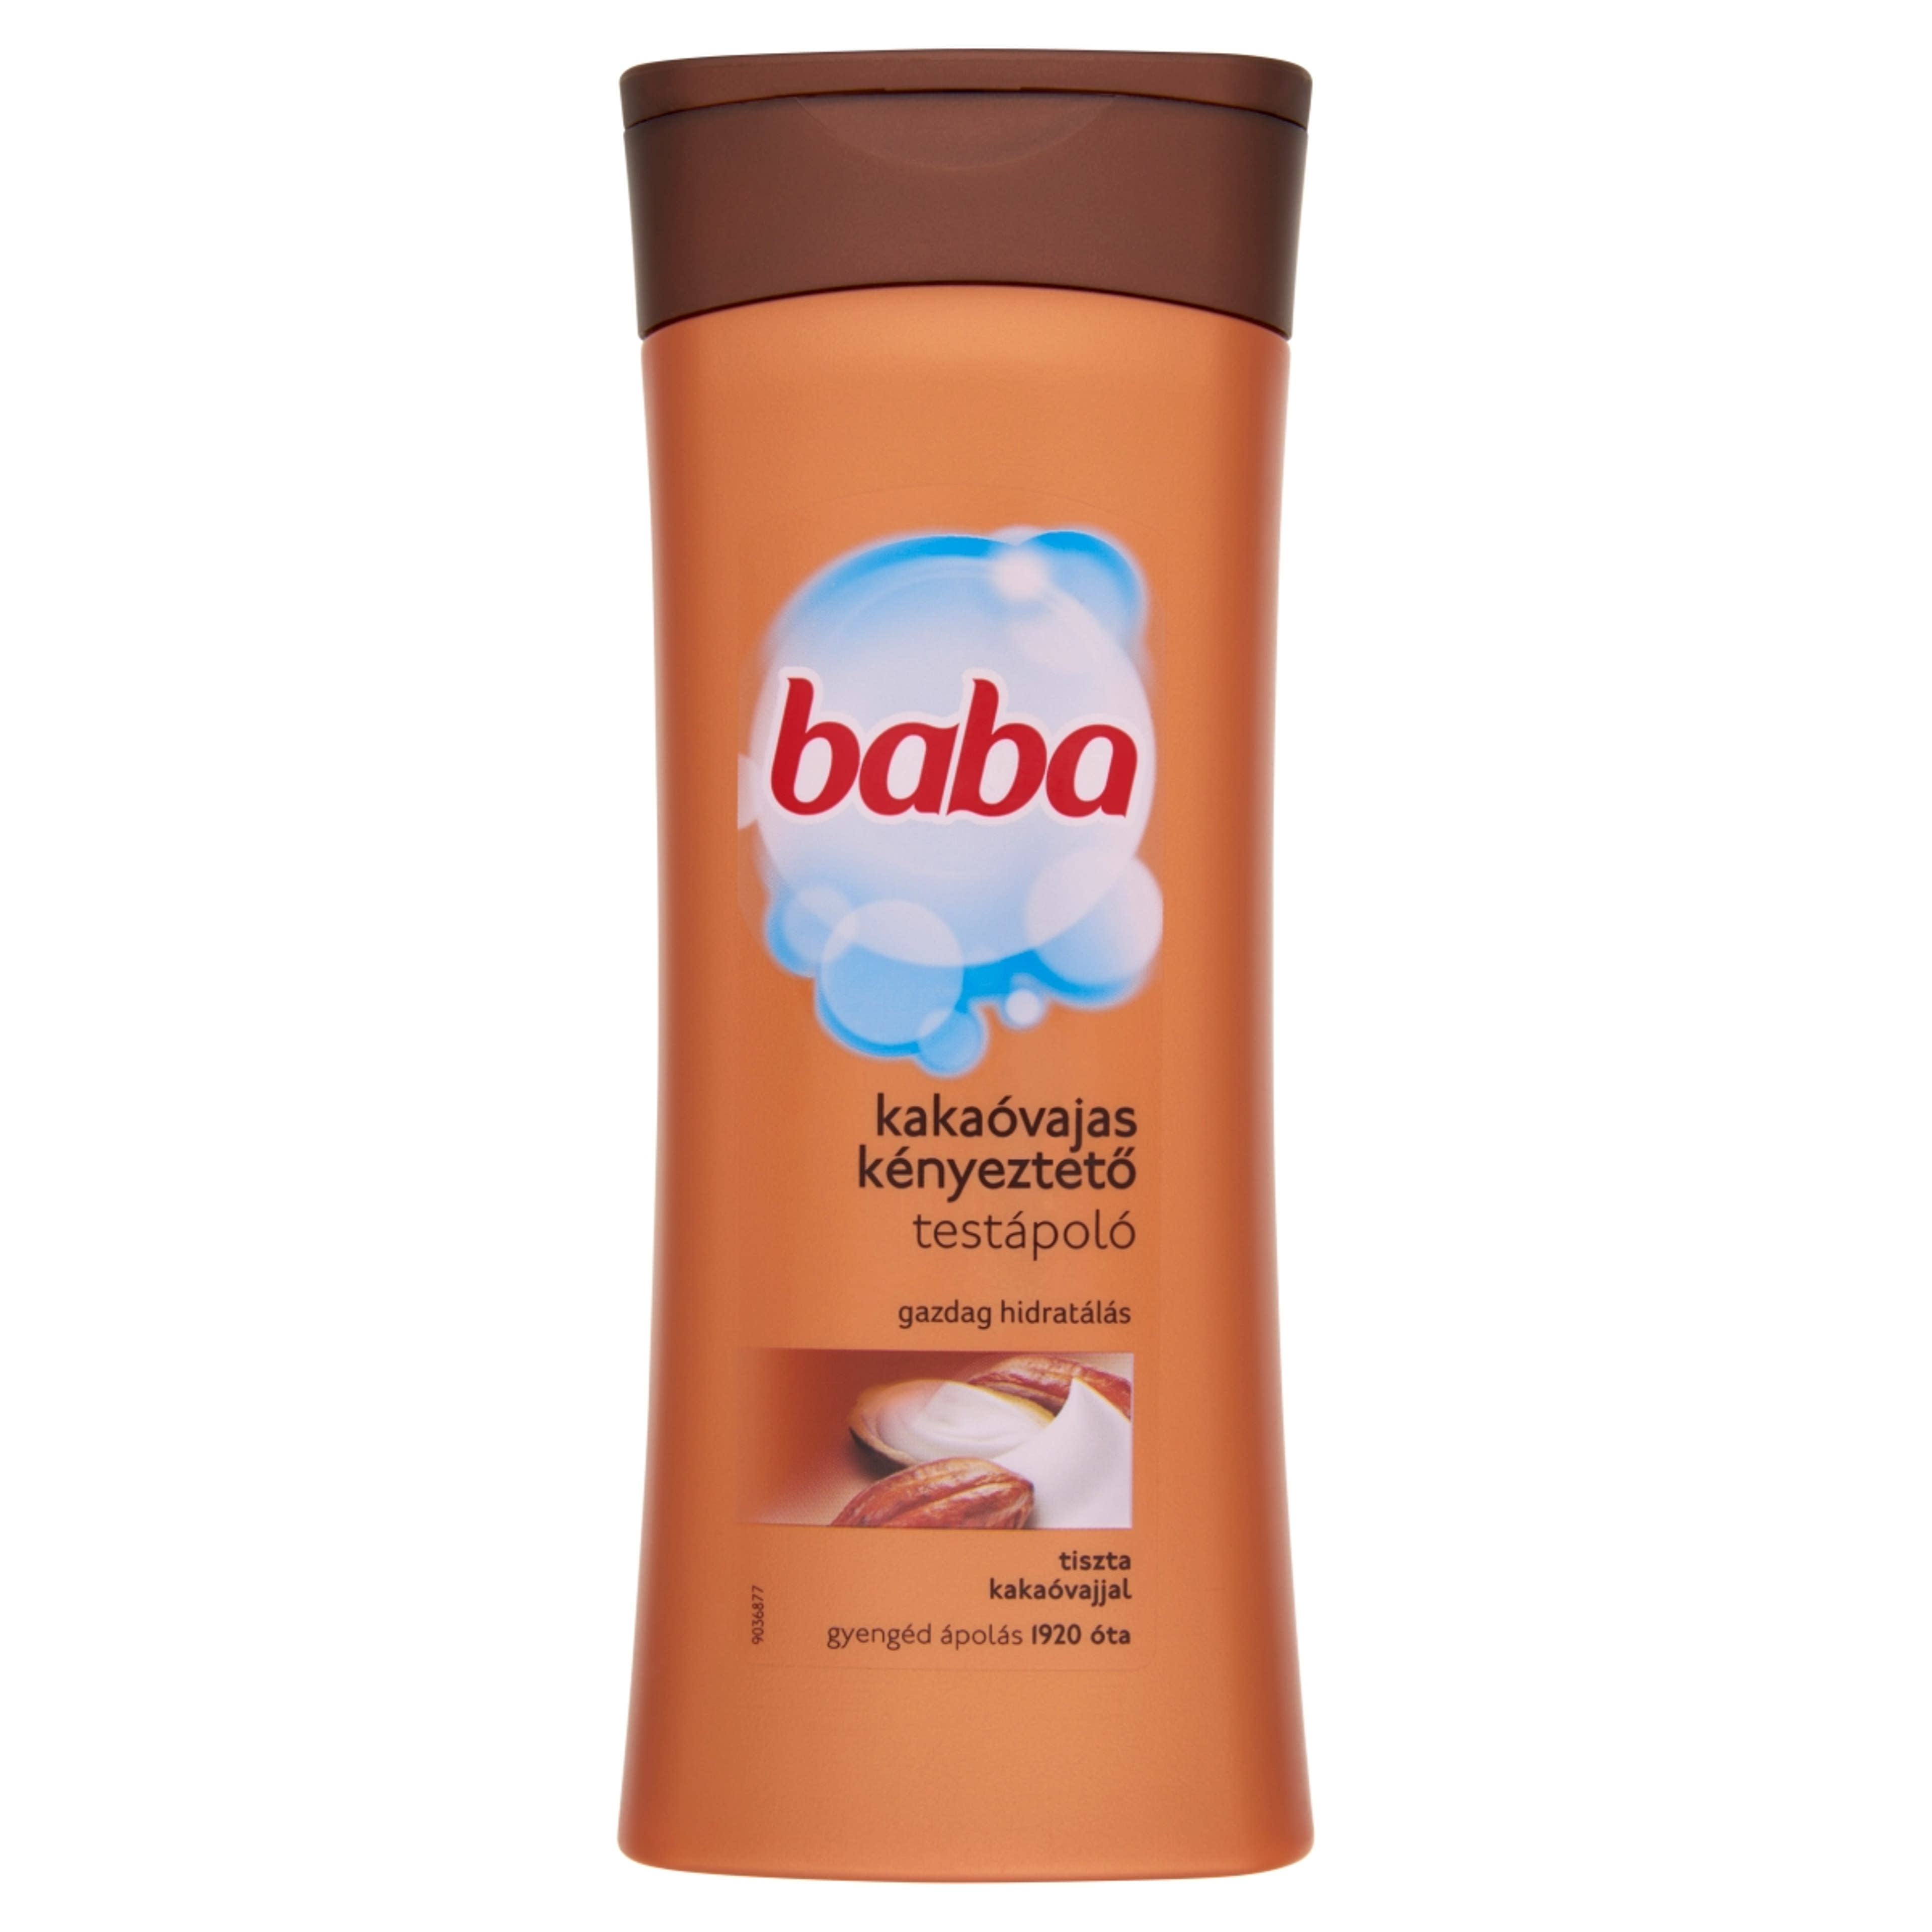 Baba testápoló Kakaóvaj kényeztető hidratálás - 400 ml